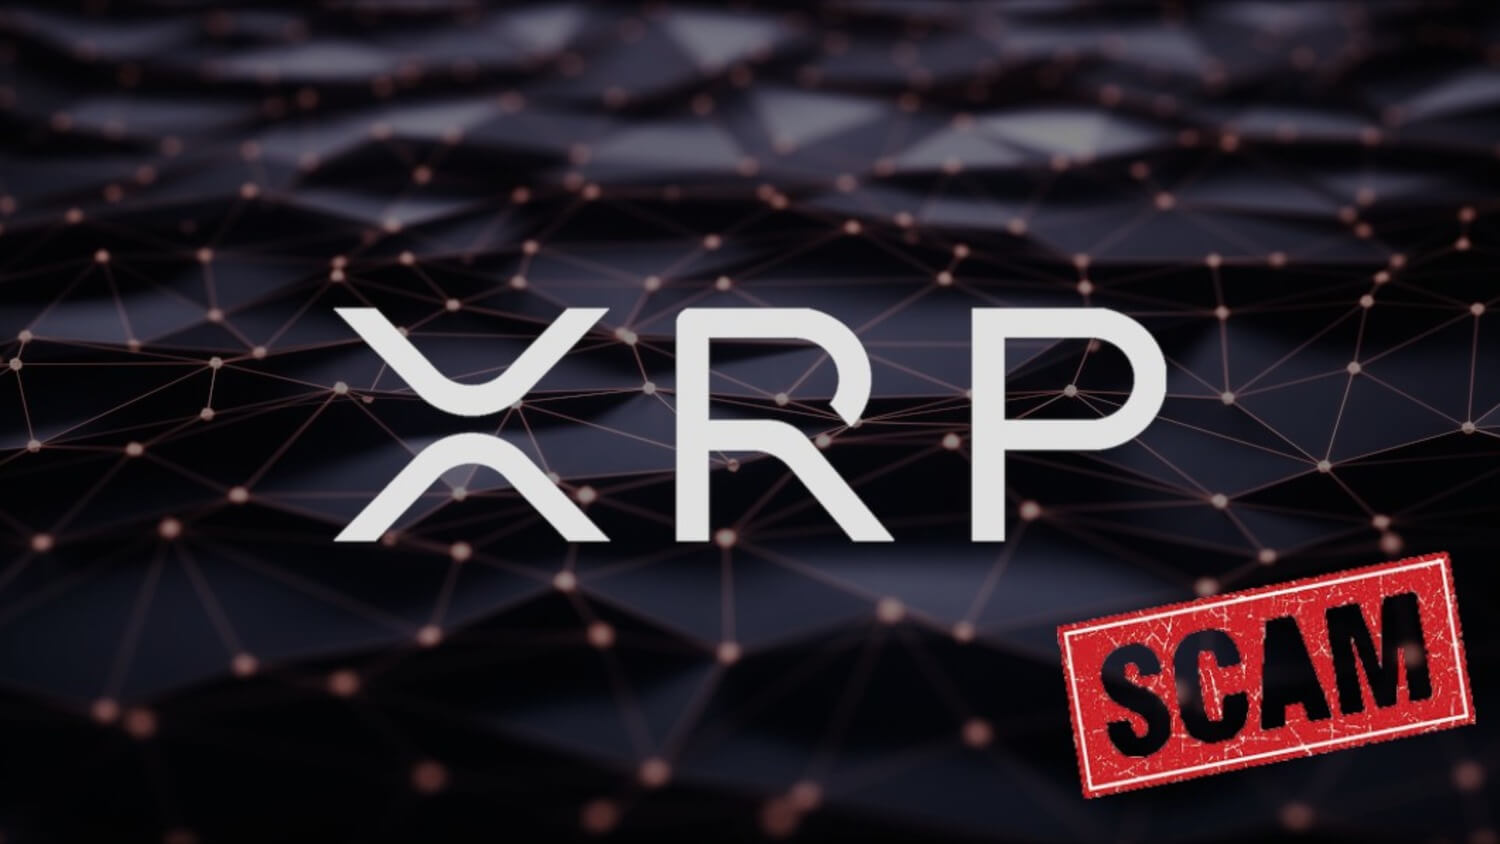 Что происходит с Ripple XRP? Примечательно, что из-за излишней централизованности в Ripple токен XRP многие криптоэнтузиасты считают скамом. Фото.